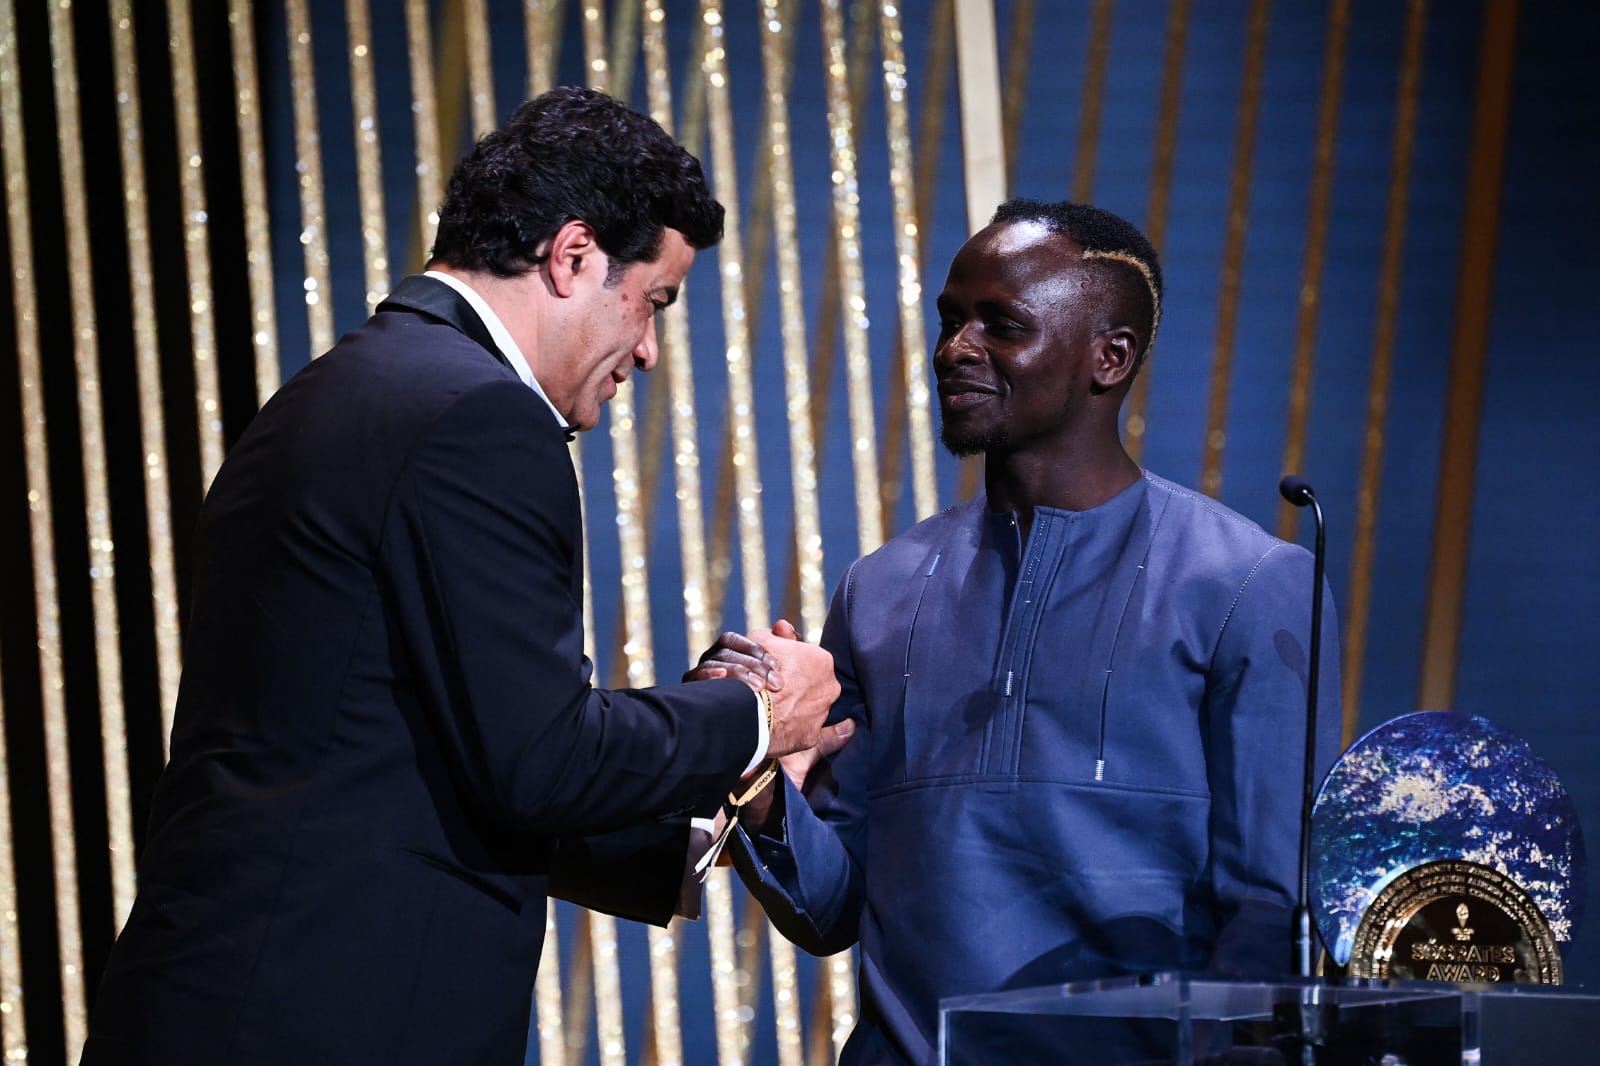 Raí, de terno preto e à esquerda, cumprimenta o senegalês Sadio Mané, à direita com vestimenta cinza, na entrega do Prêmio Sócrates